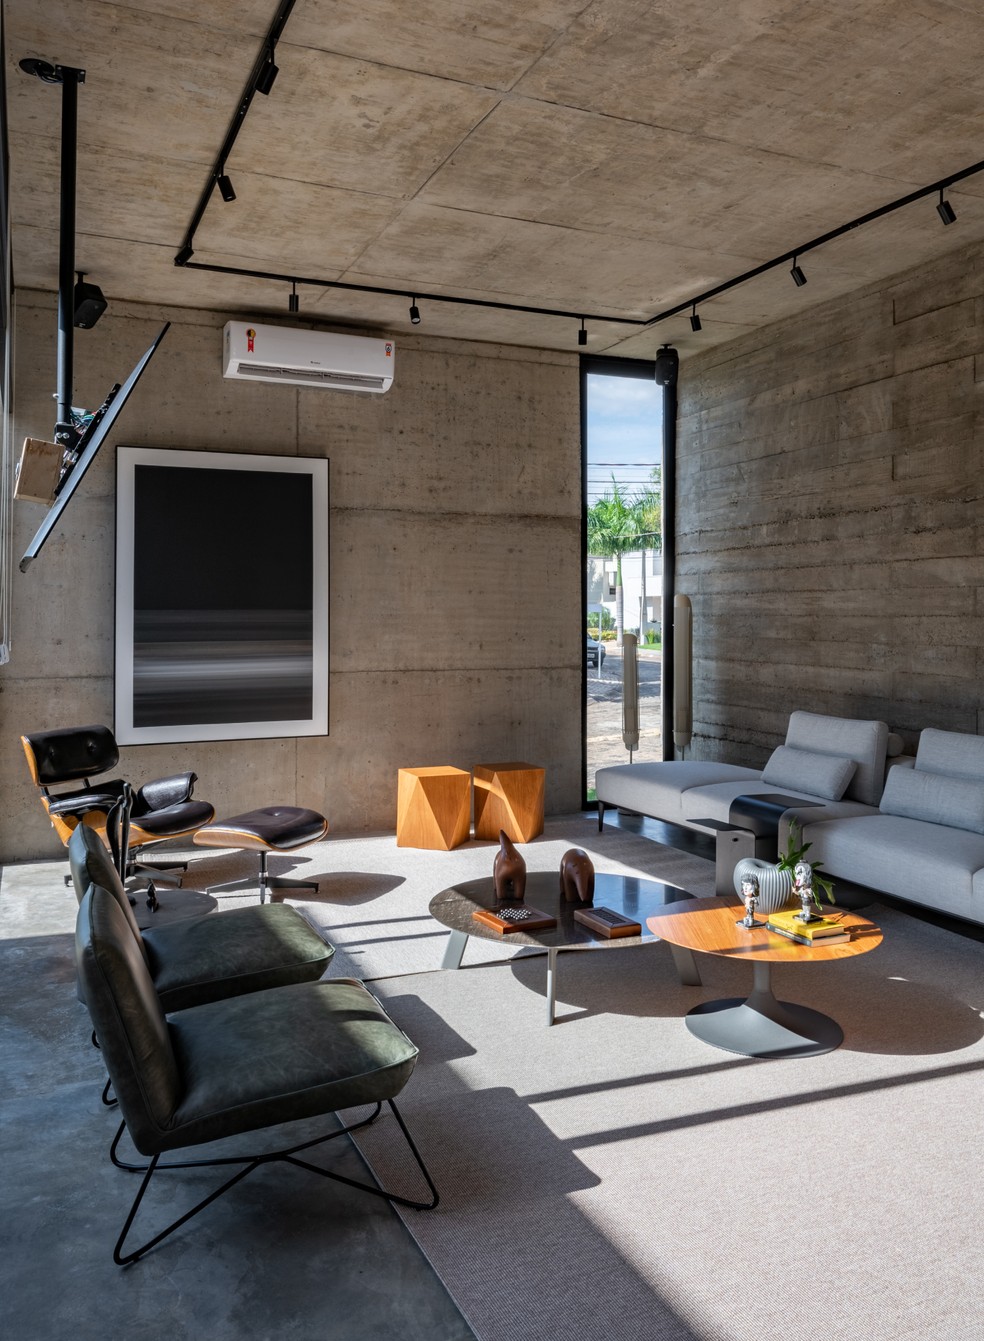 Com estilo industrial, sala de estar foi pensada para receber luz natural da área externa — Foto: Fávaro Junior